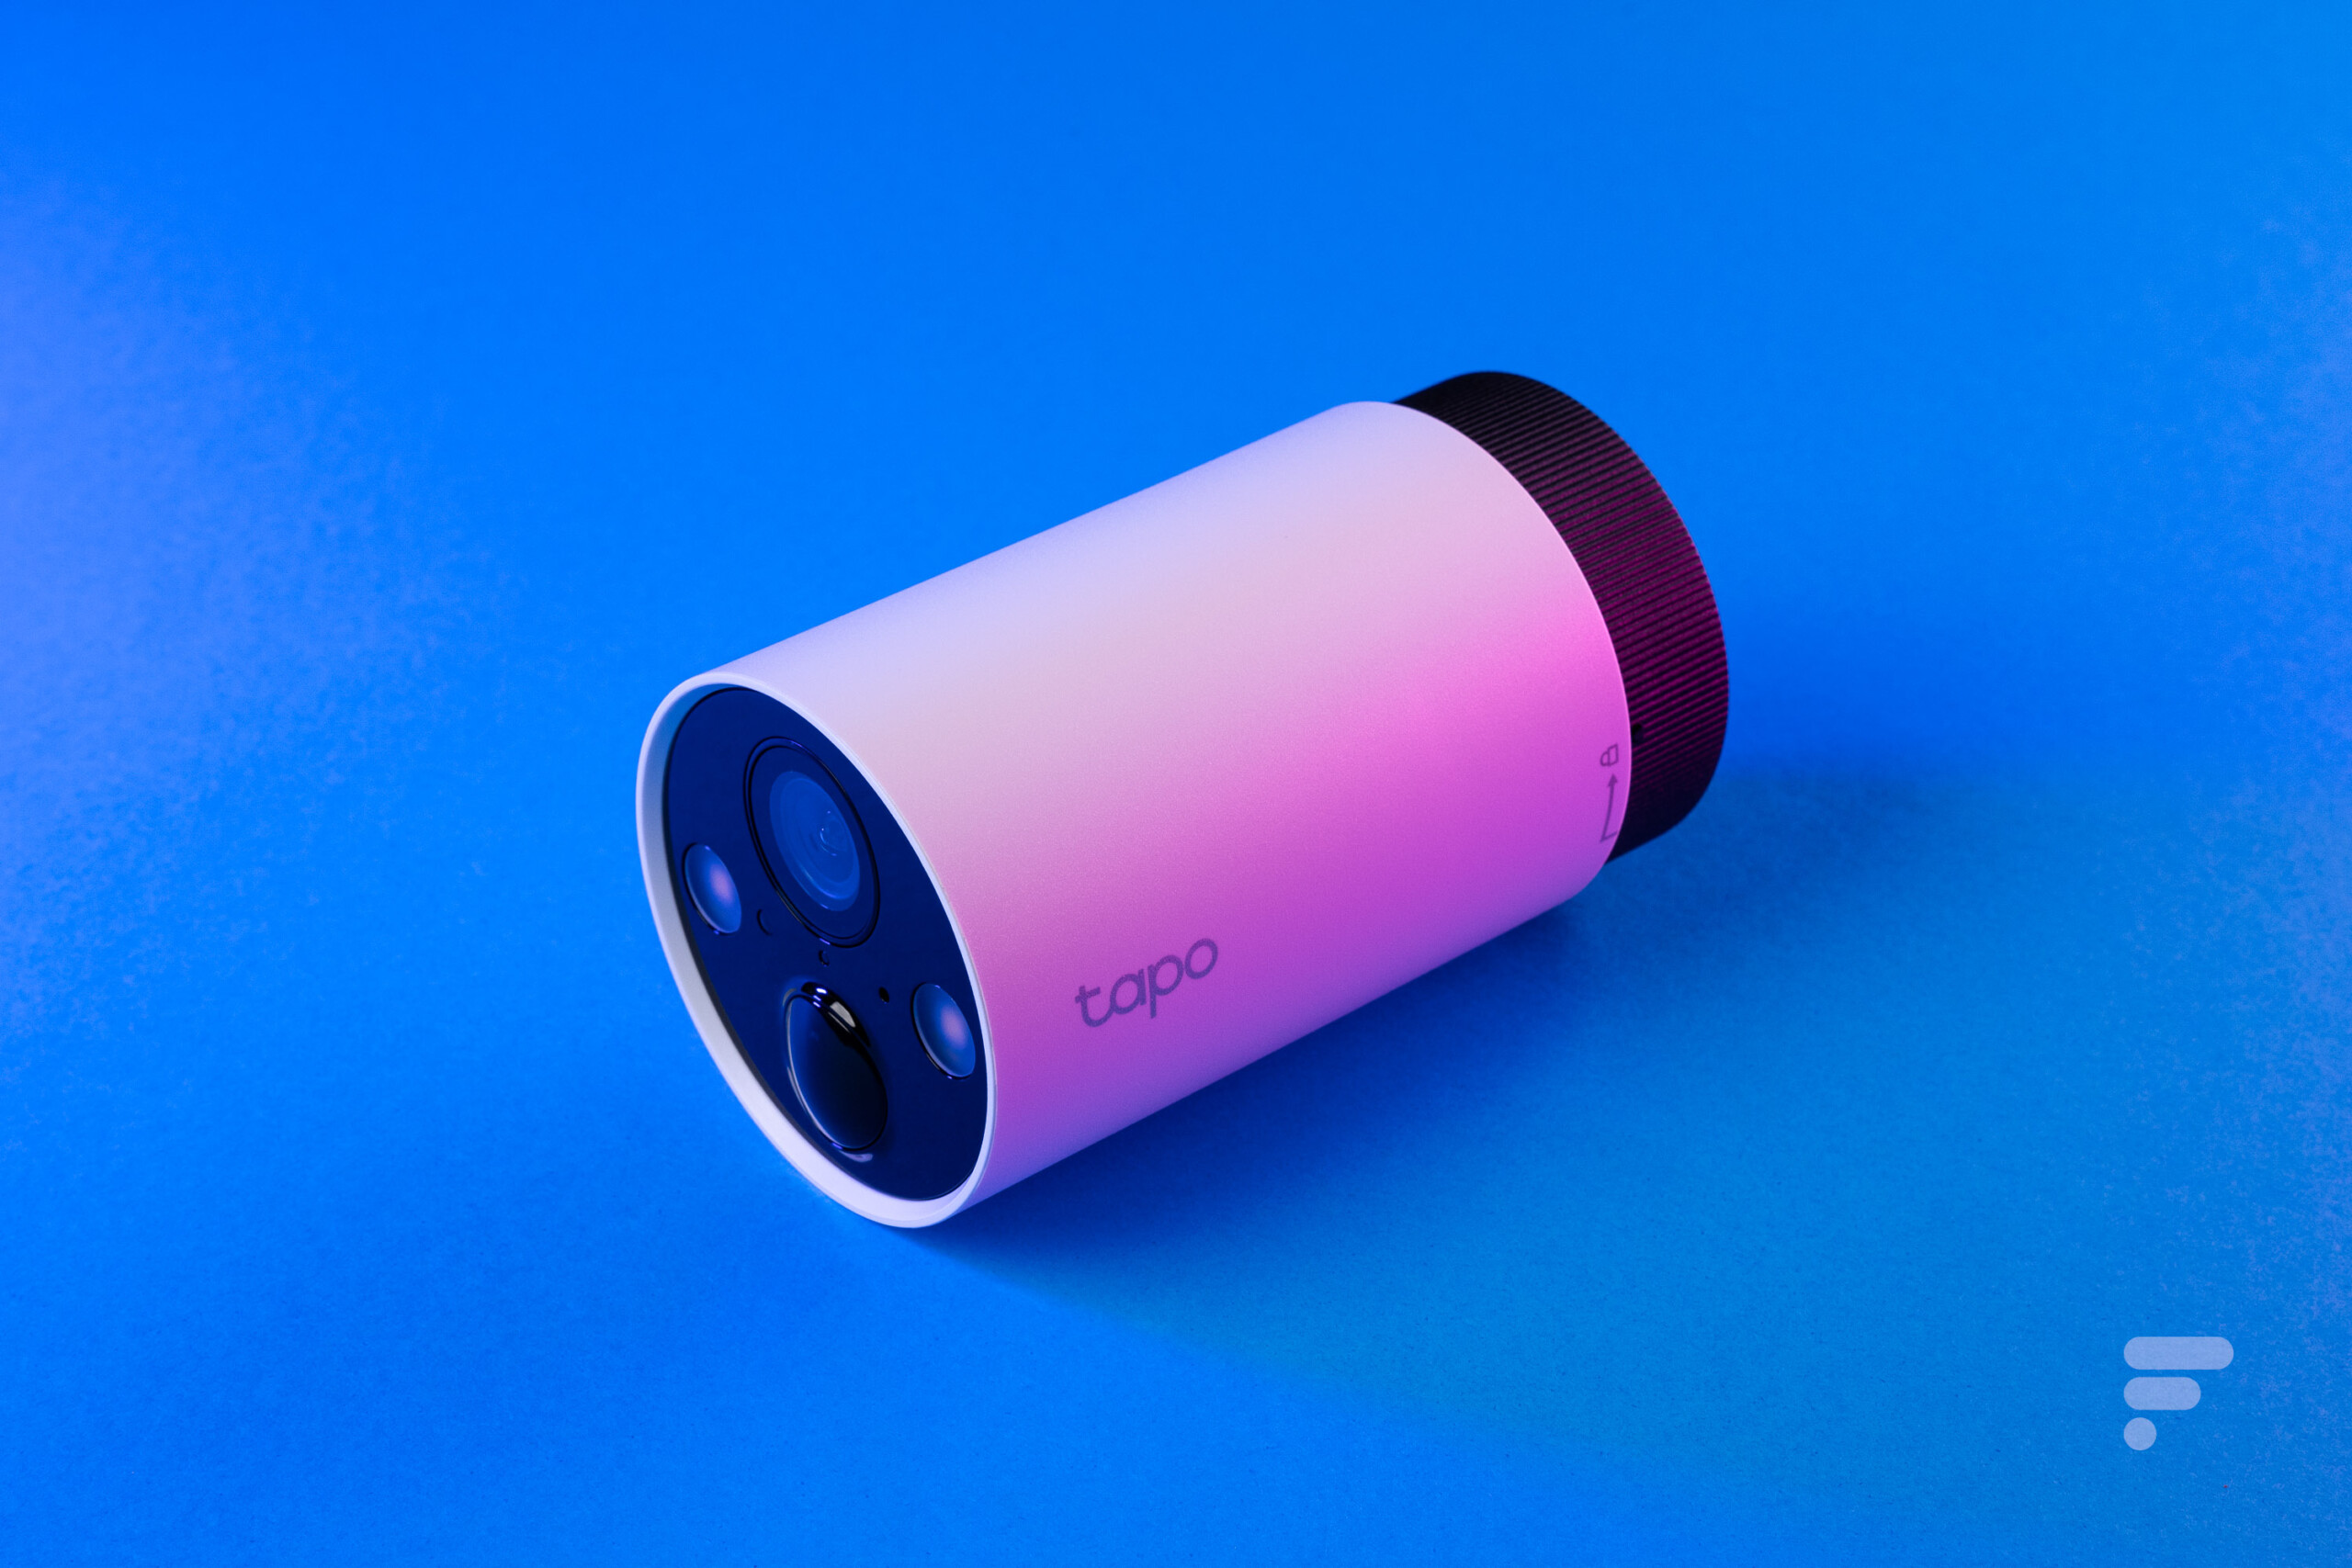 Tapo C420S1 – Caméra sans fil (0 fils) extérieur 2K avec batterie